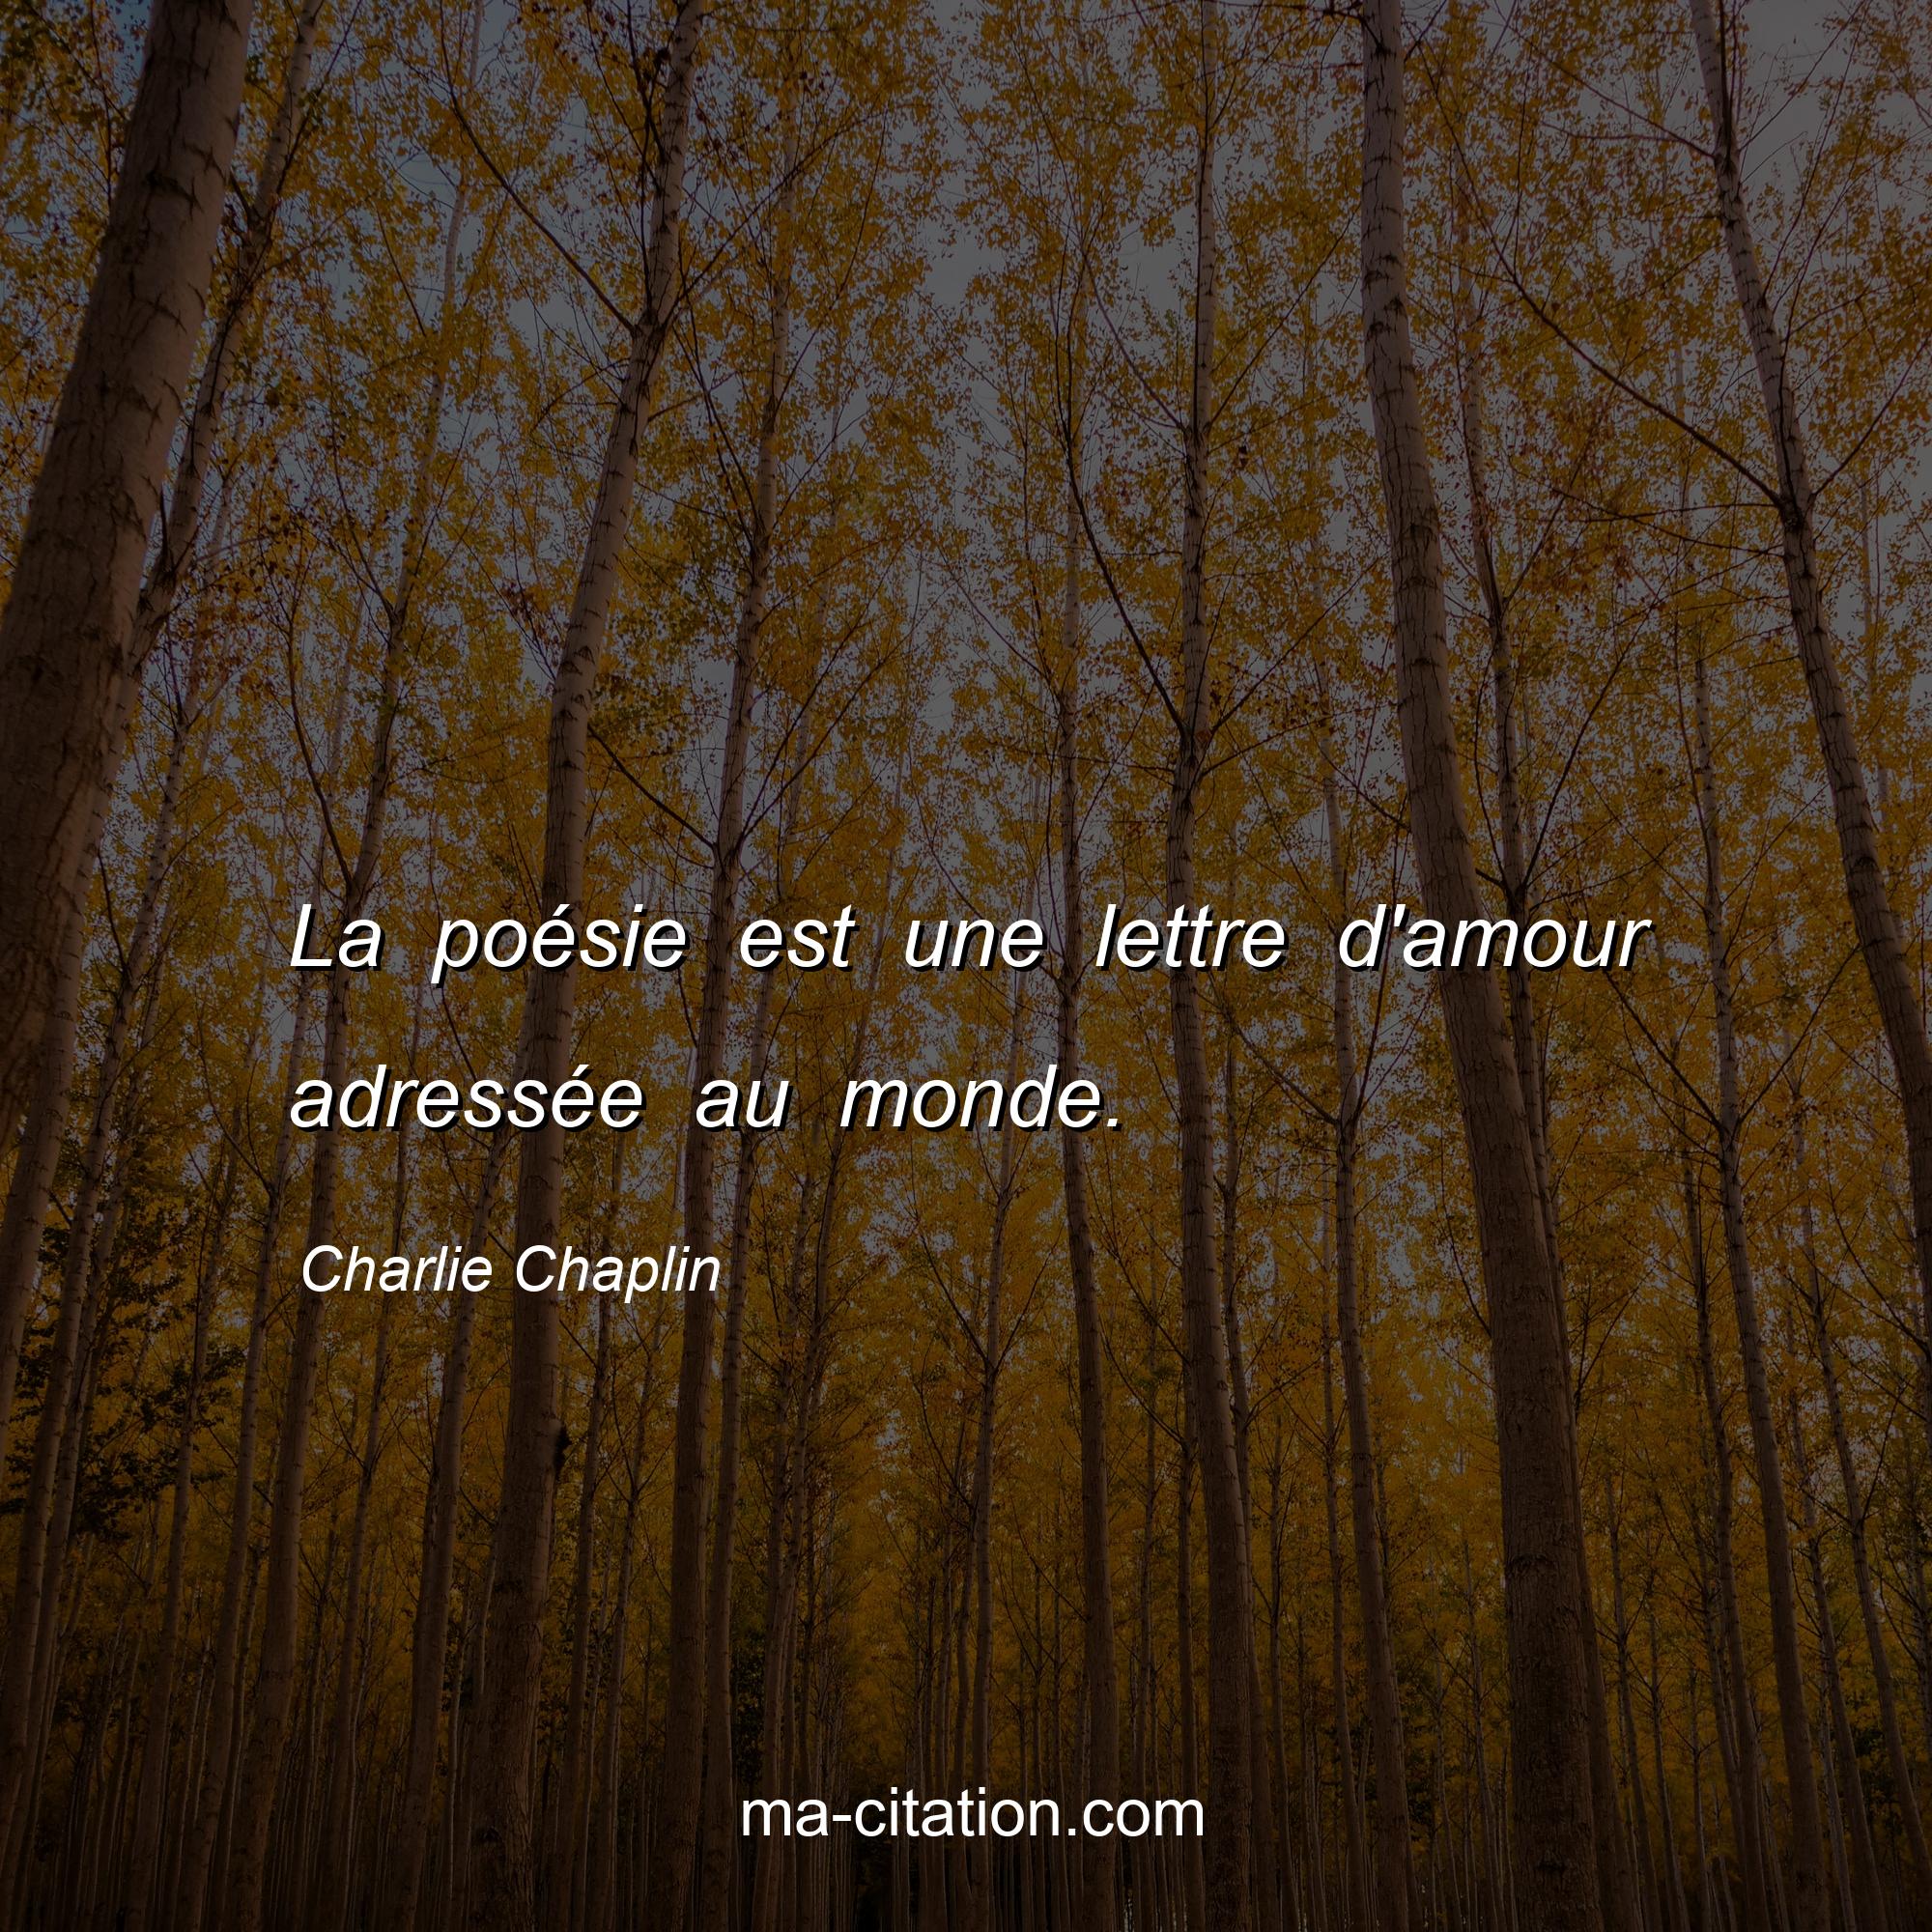 Charlie Chaplin : La poésie est une lettre d'amour adressée au monde.